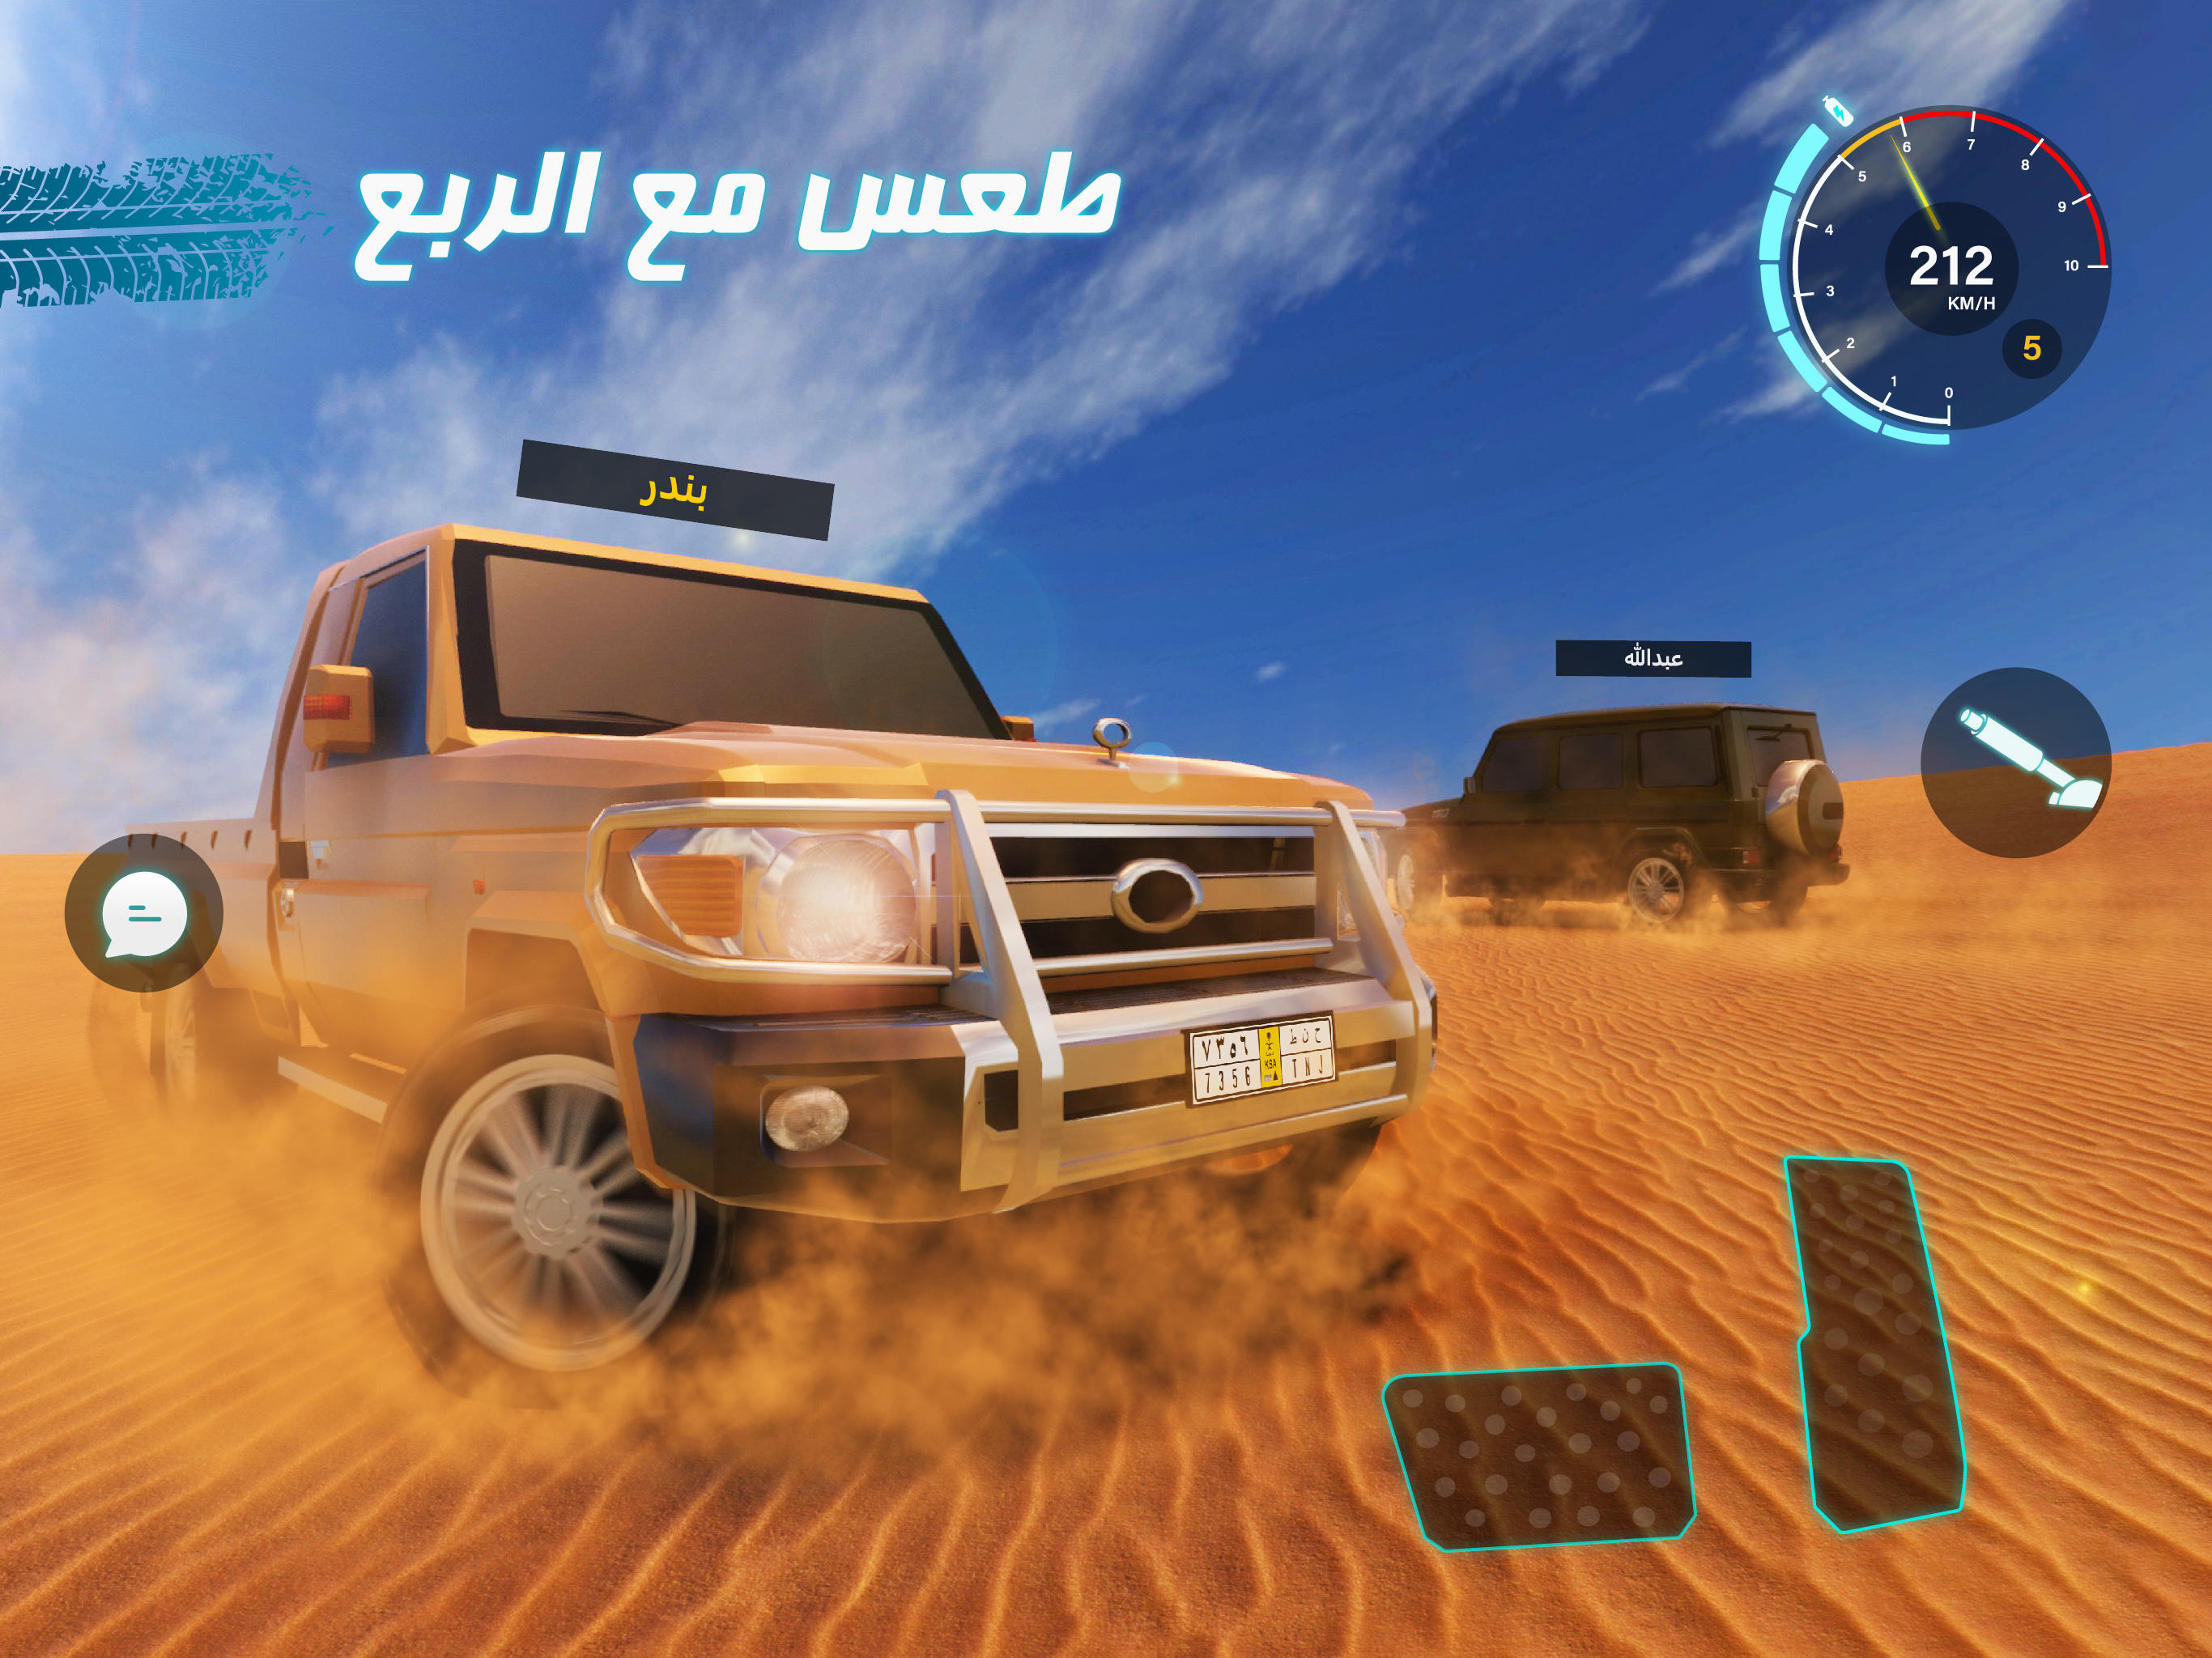 كنق الصحراء - تطعيس 2遊戲截圖